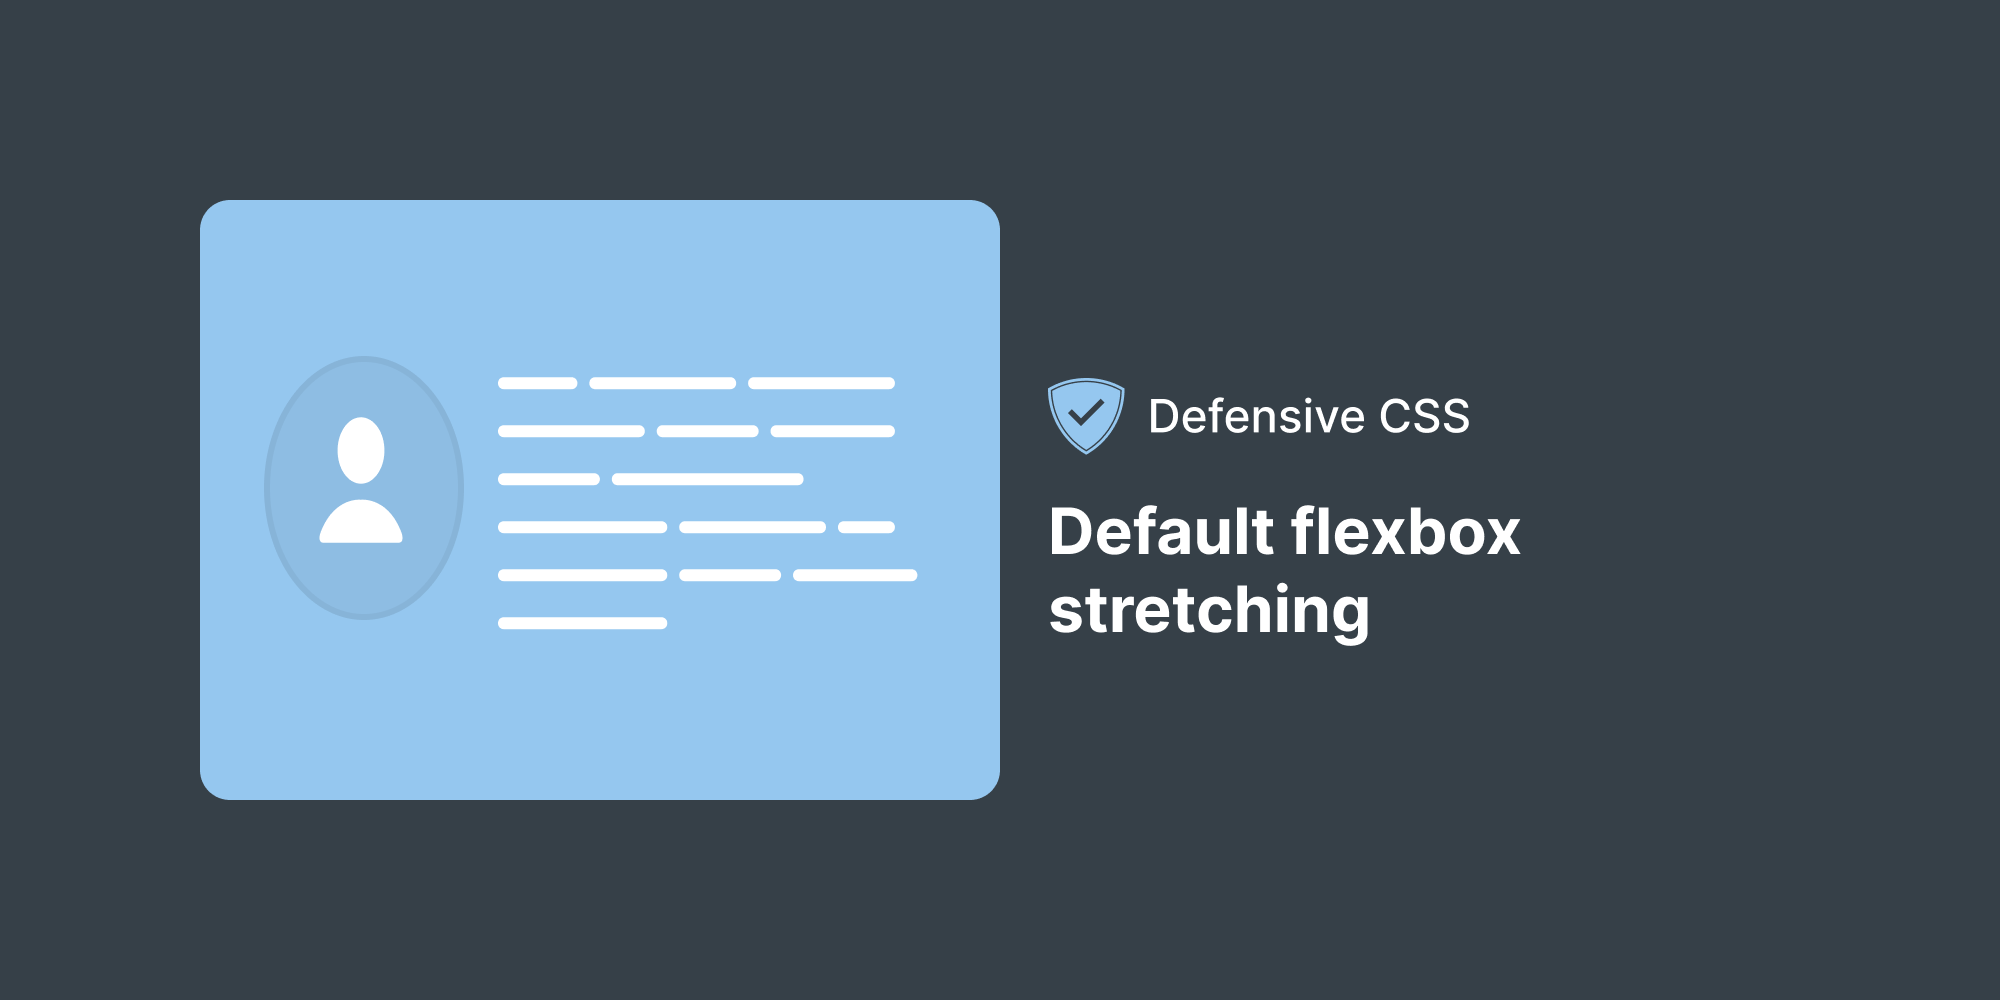 CSS phòng thủ - Dãn flexbox mặc định: Học cách sử dụng Defensive CSS và áp dụng nó cho Default flexbox stretching để phòng thủ chặt chẽ hơn trước các tấn công lỗi trên trang web của bạn. Nhấn vào hình ảnh và tìm hiểu thêm về các kỹ thuật phòng thủ khác để bảo vệ trang web của bạn tốt hơn.